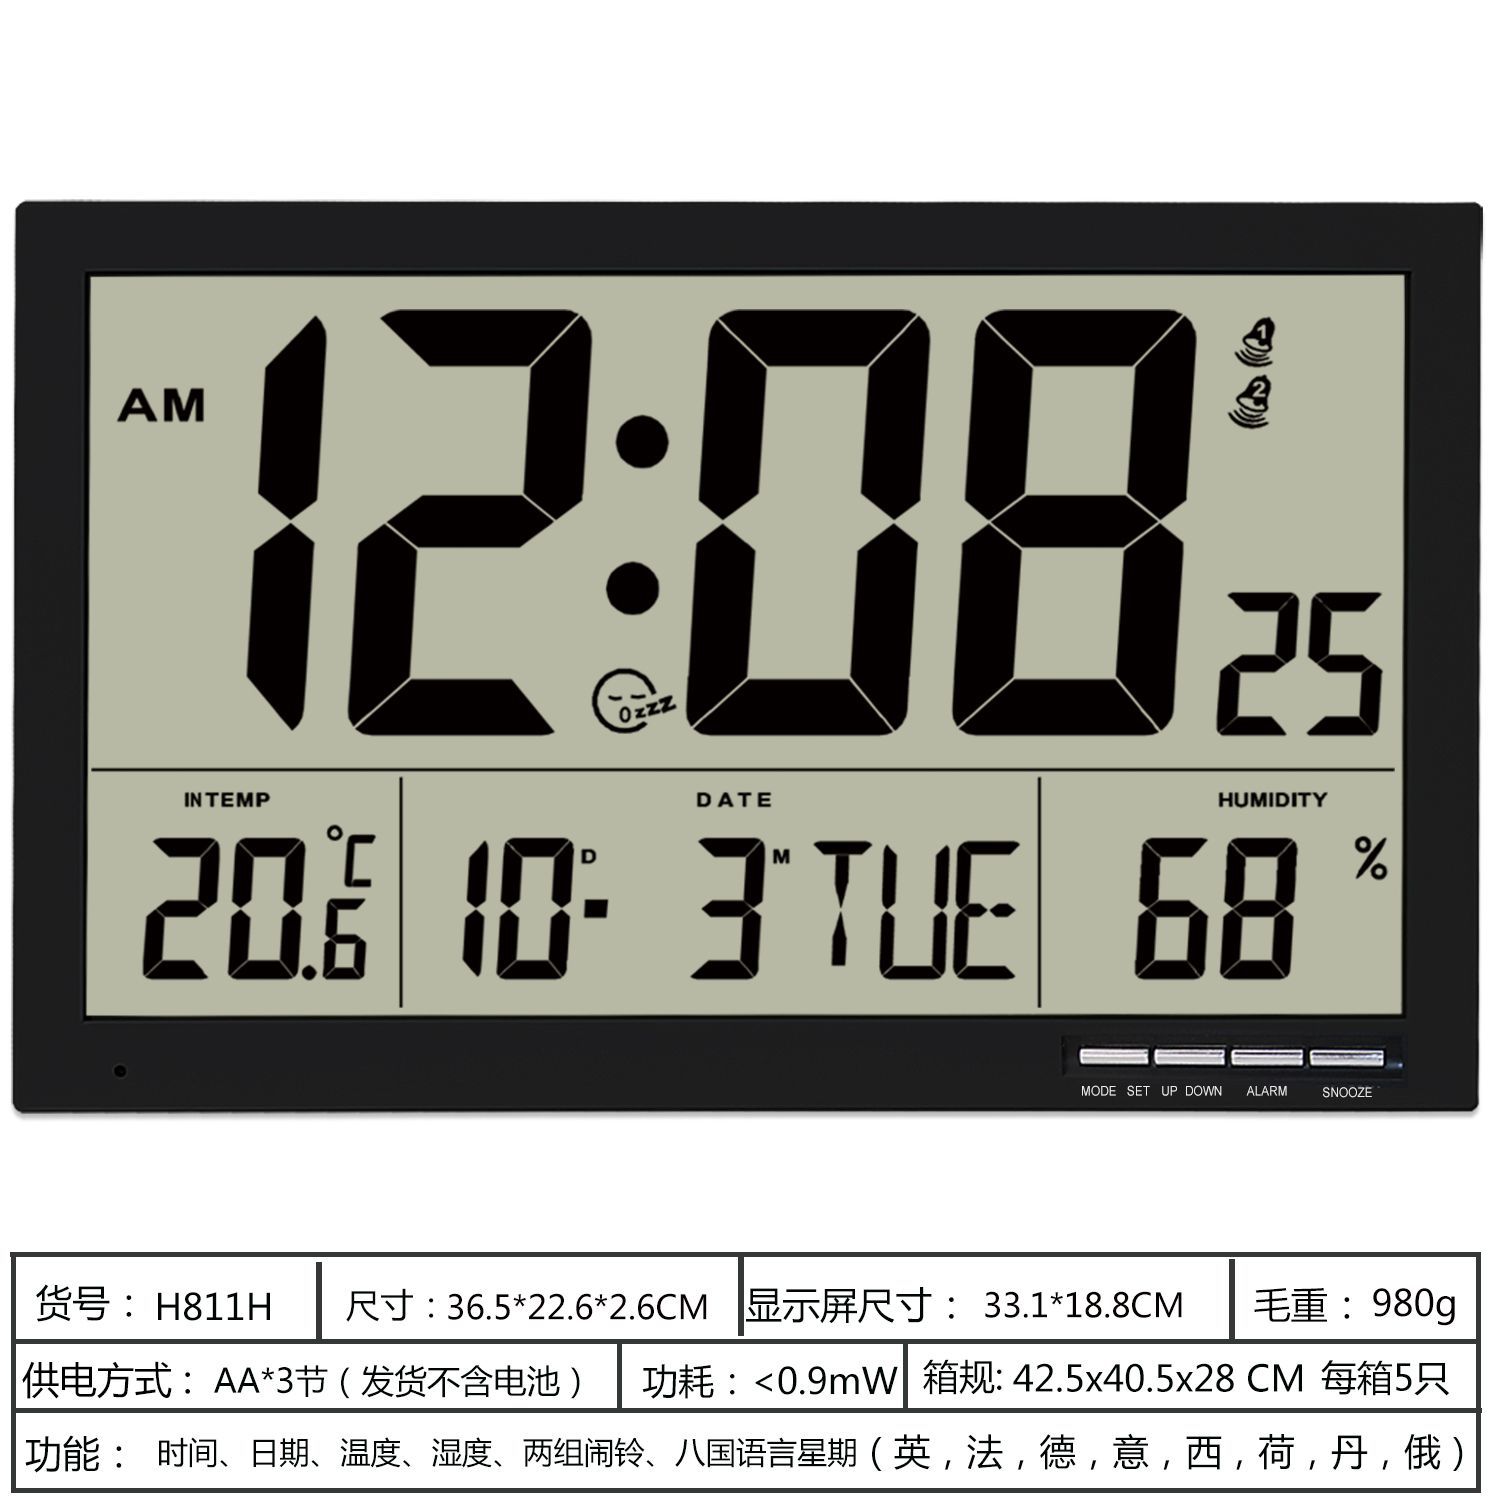 欧美客厅大堂LCD数字显示挂钟多功能万年历超大屏高清温湿度闹钟